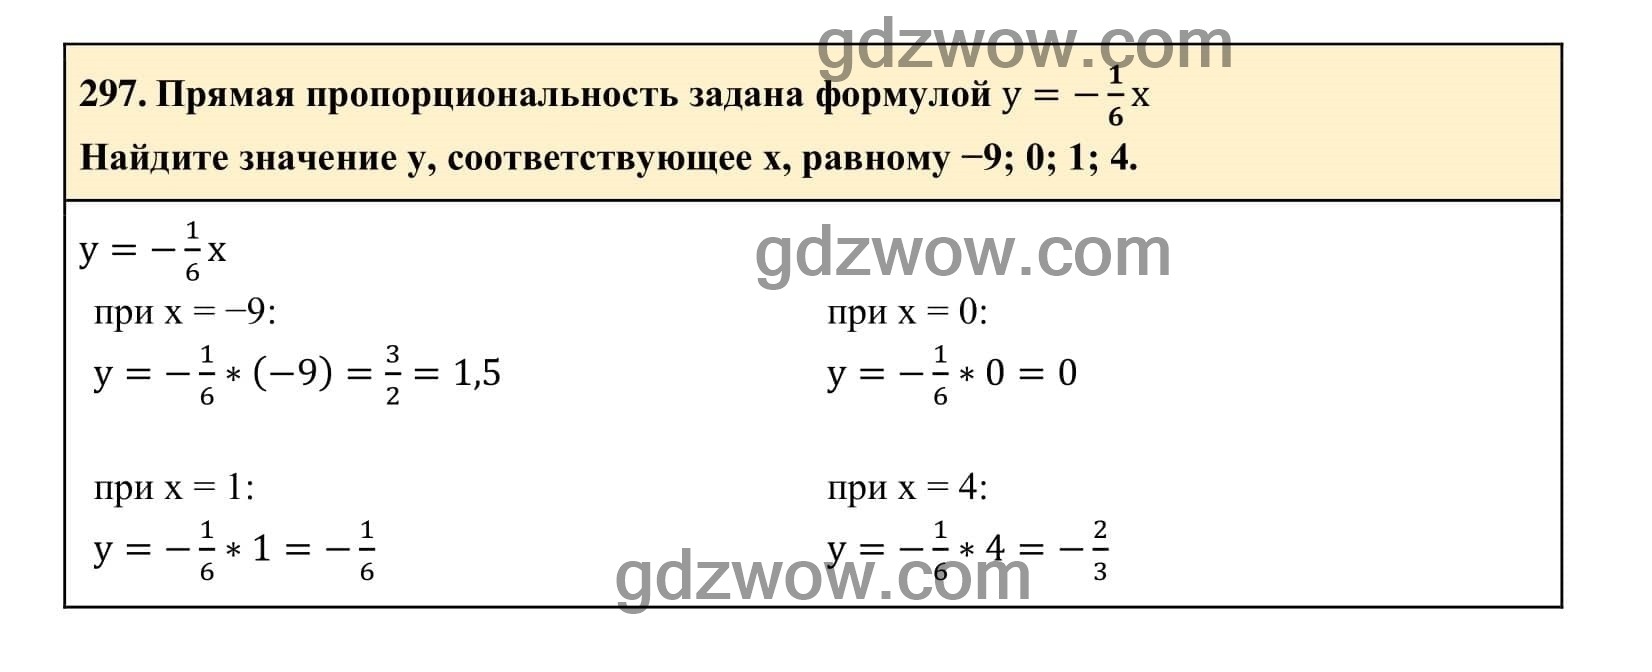 Упражнение 299 - ГДЗ по Алгебре 7 класс Учебник Макарычев (решебник) - GDZwow